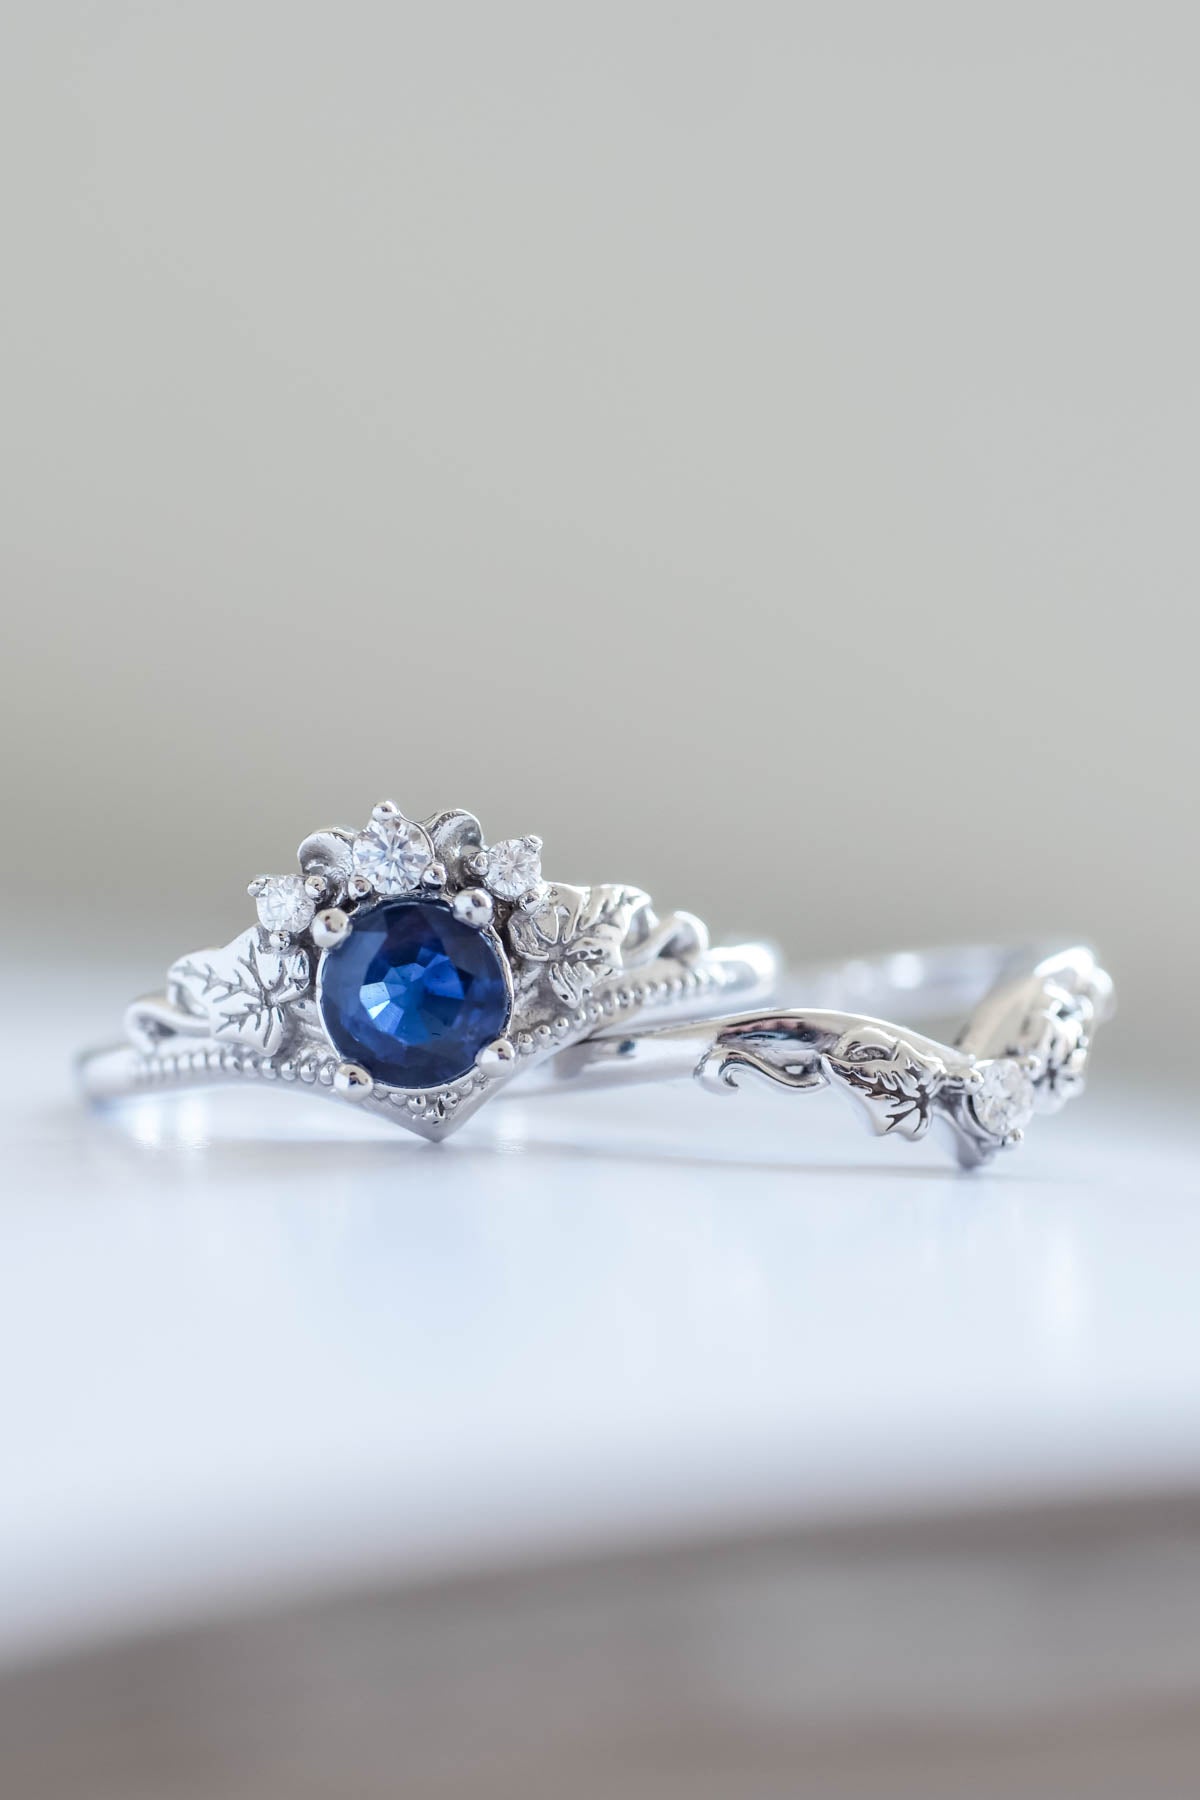 Dark blue sapphire engagement ring, alternative gold proposal ring / Ariadne - Eden Garden Jewelry™